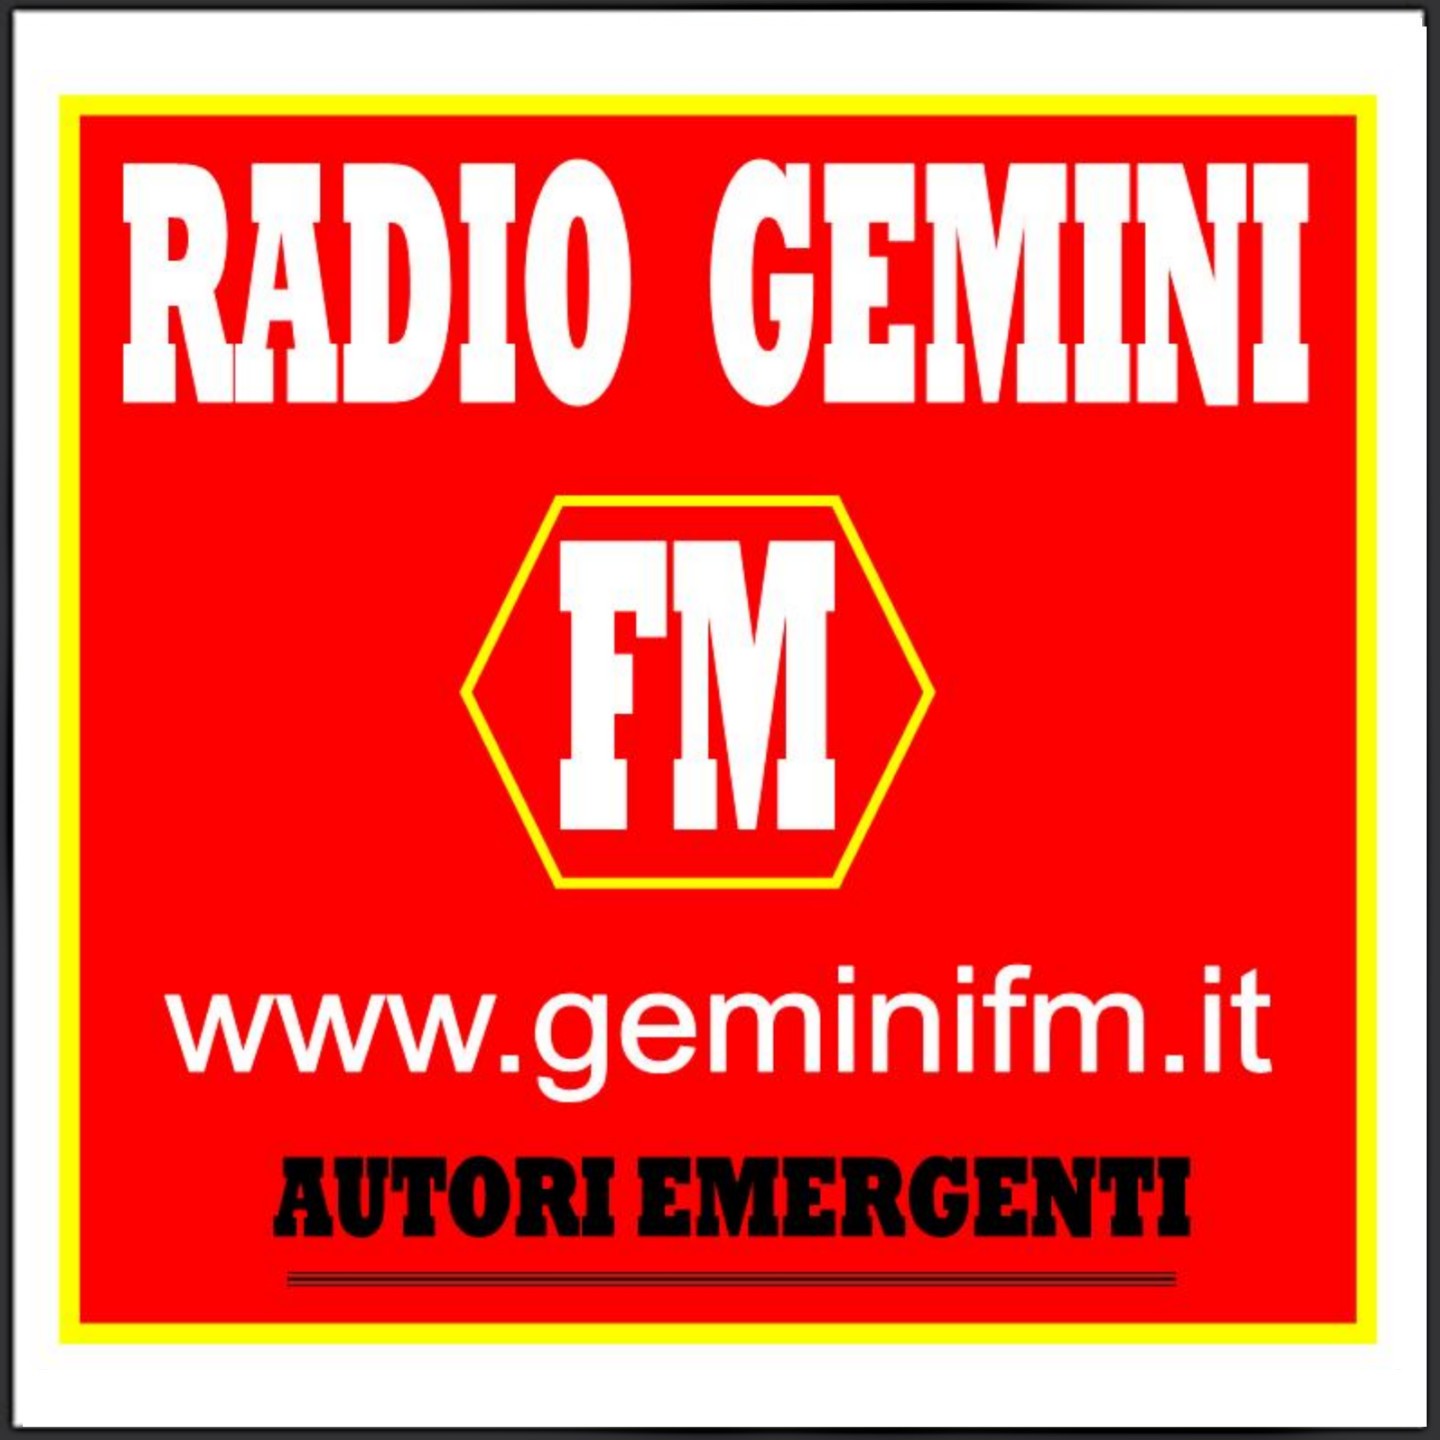 RADIO GEMINI FM